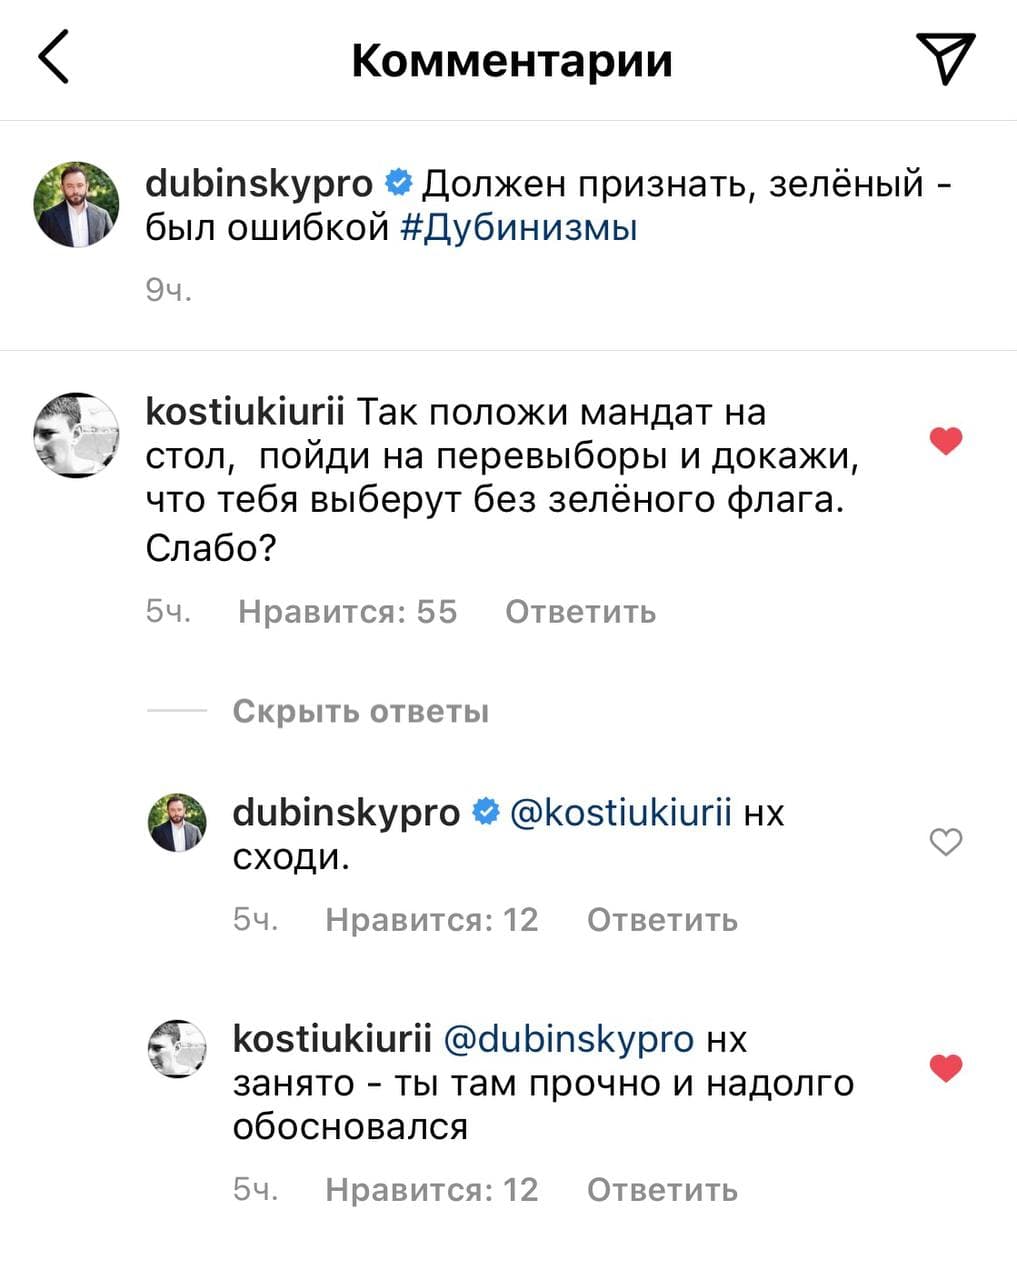 Дубинский угодил в скандал. Скриншот: instagram.com/dubinskypro